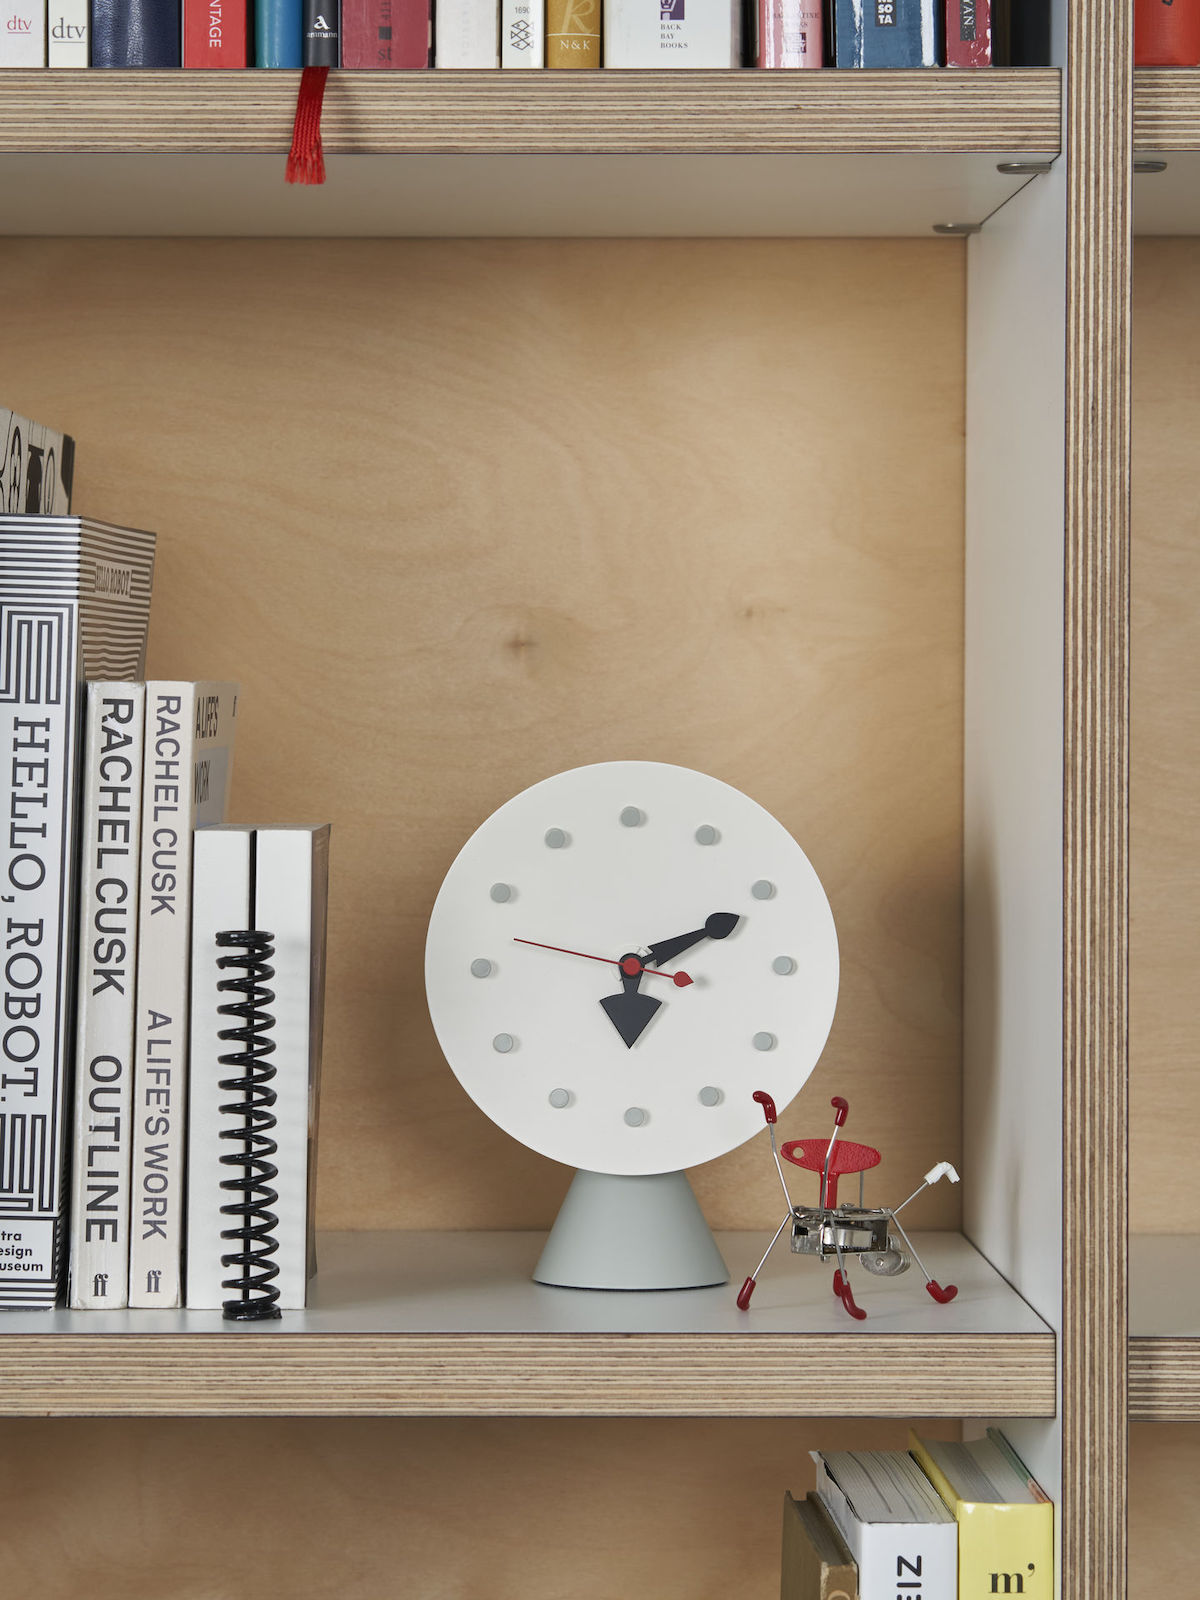 Homeoffice Accessoires von Vitra: Desk Clock